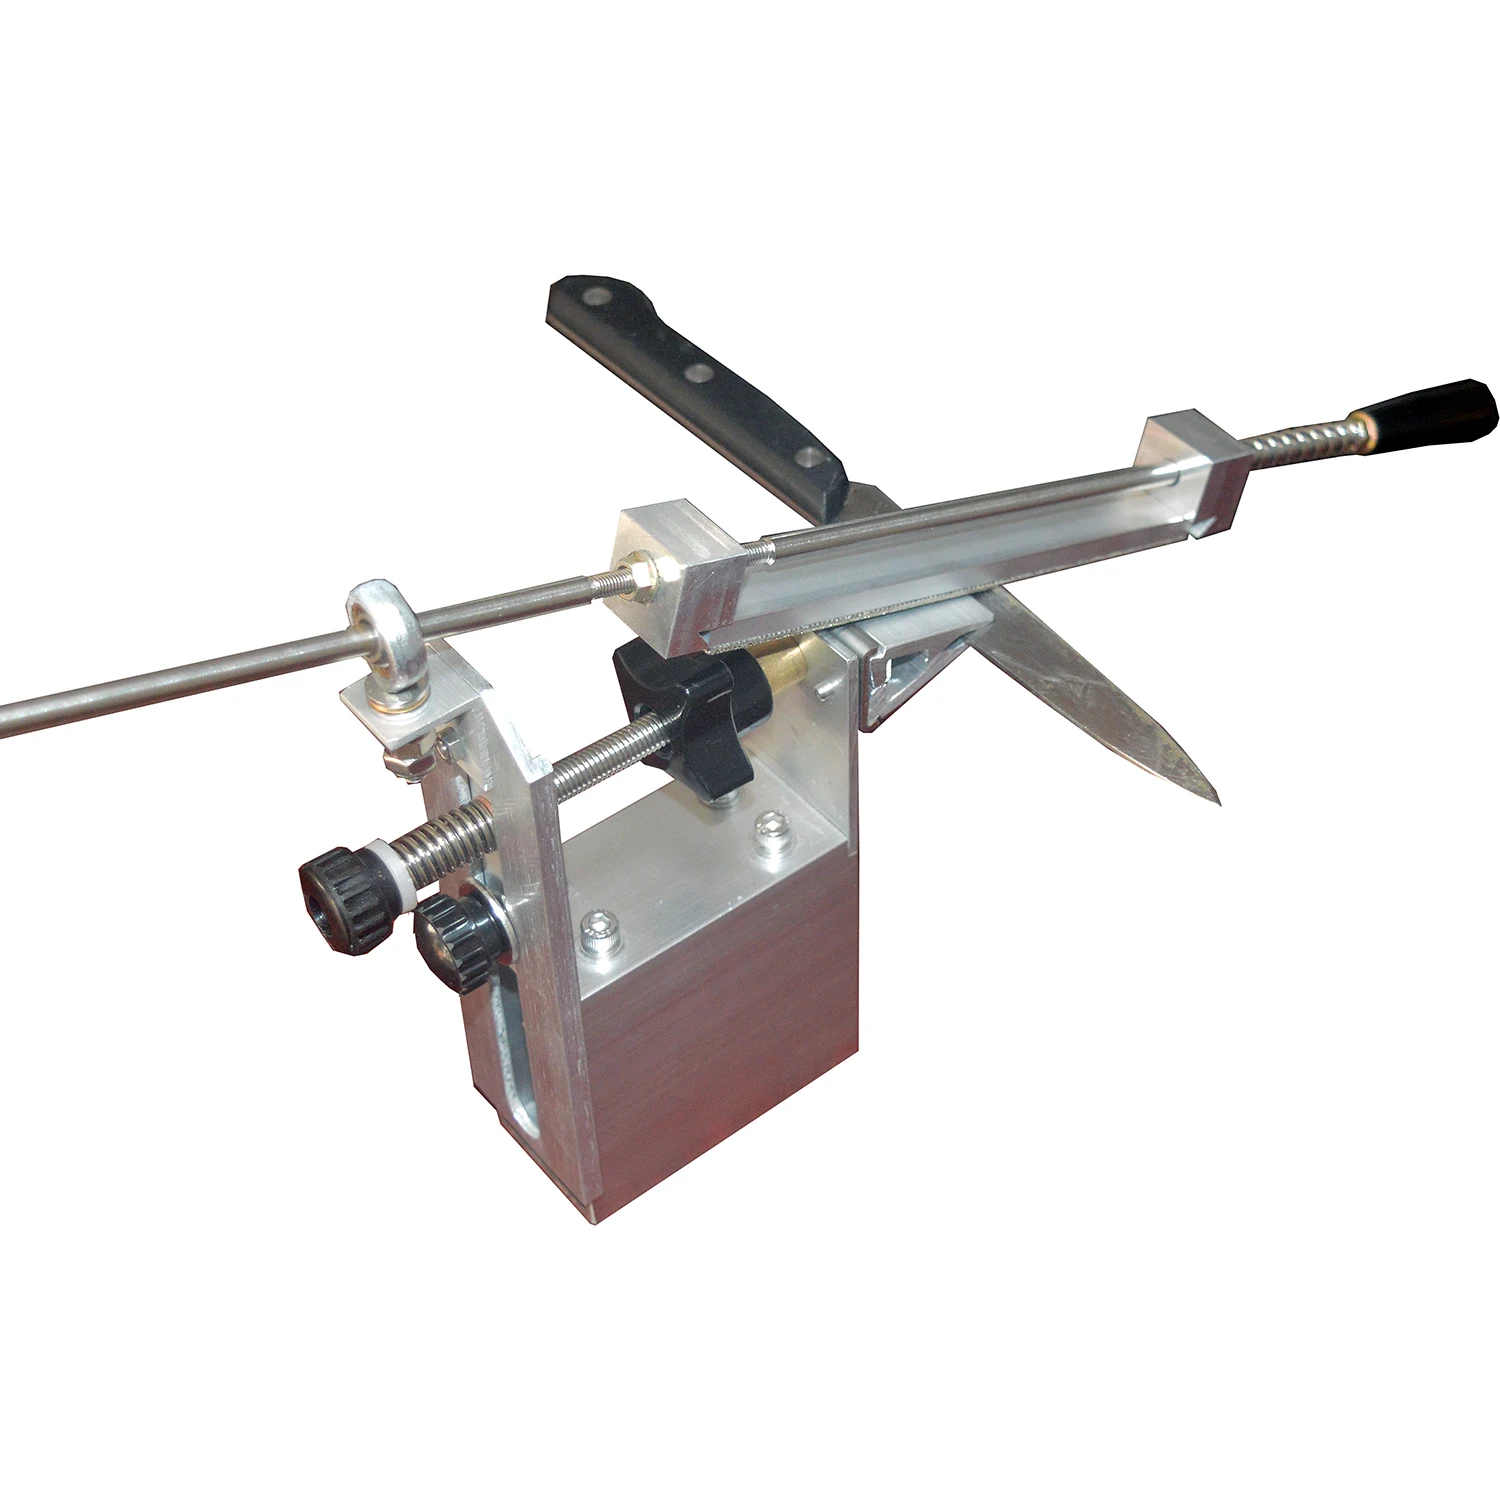 KME III точилка для ножей Профессиональная шлифовальная машина для заточки профессиональных ножей Система заточки ножей